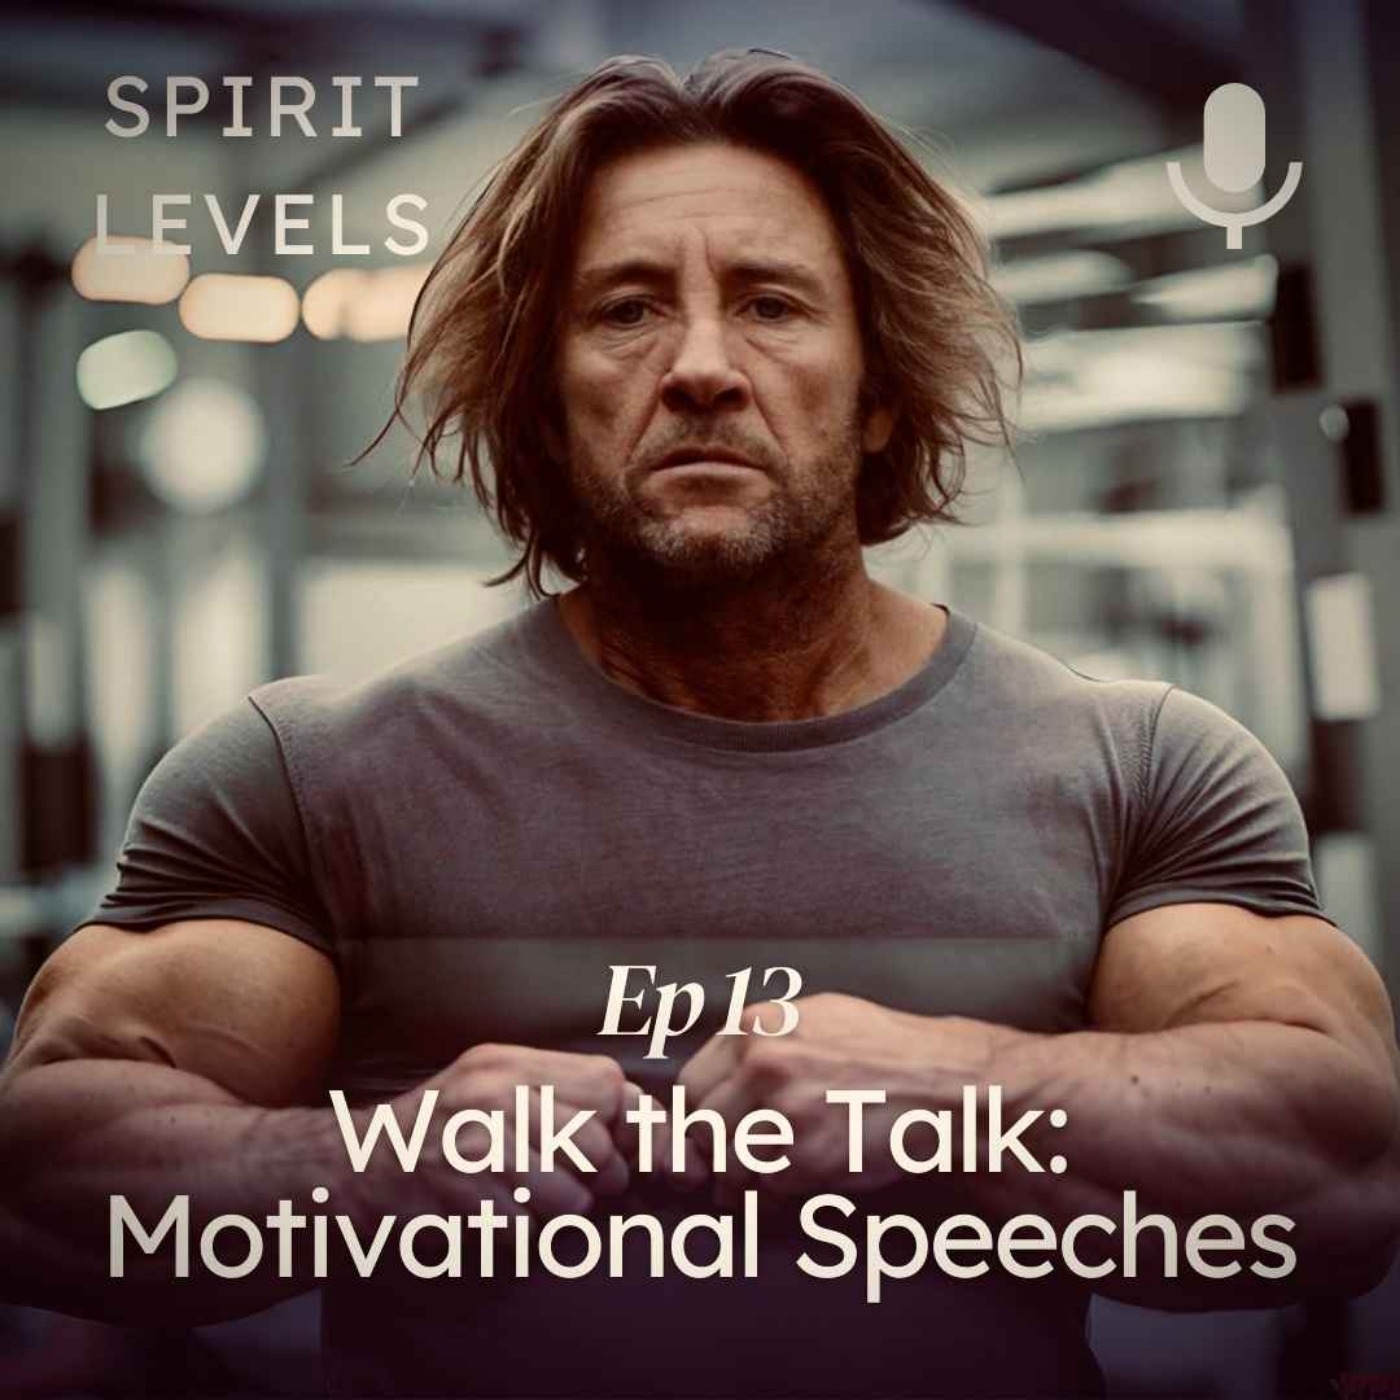 Walk the Talk: Motivational Speeches